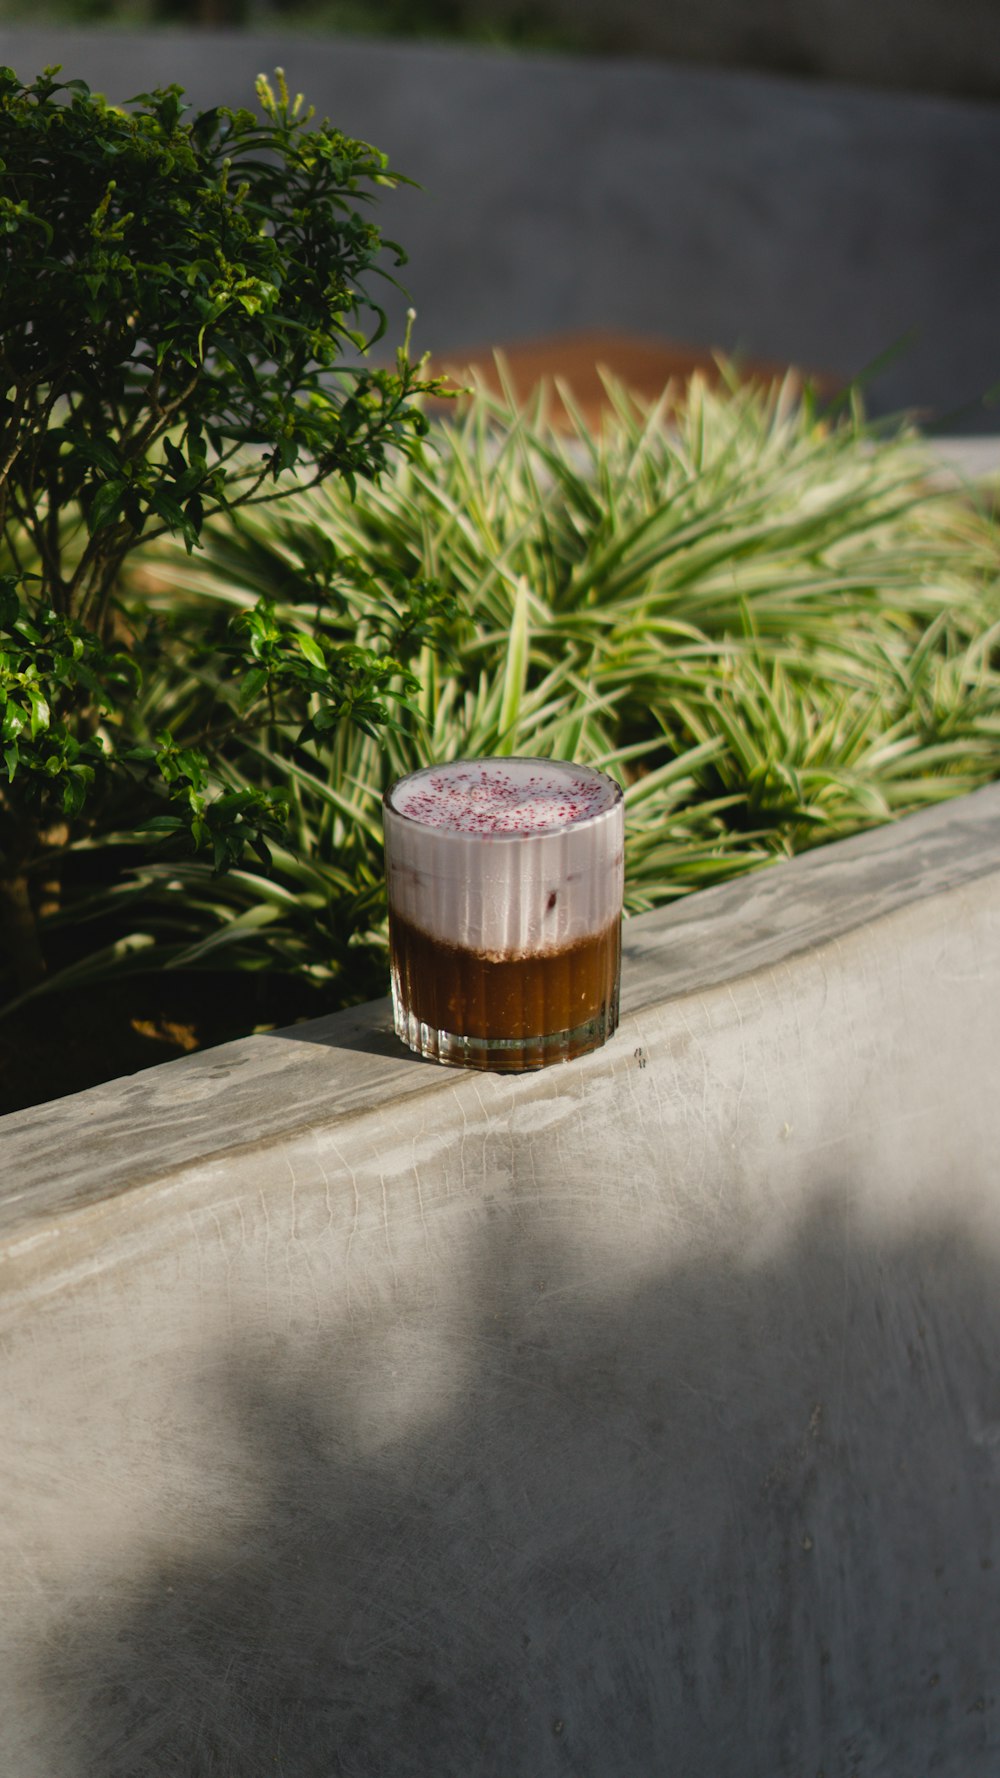 Un vaso de cerveza sentado en una repisa junto a un arbusto